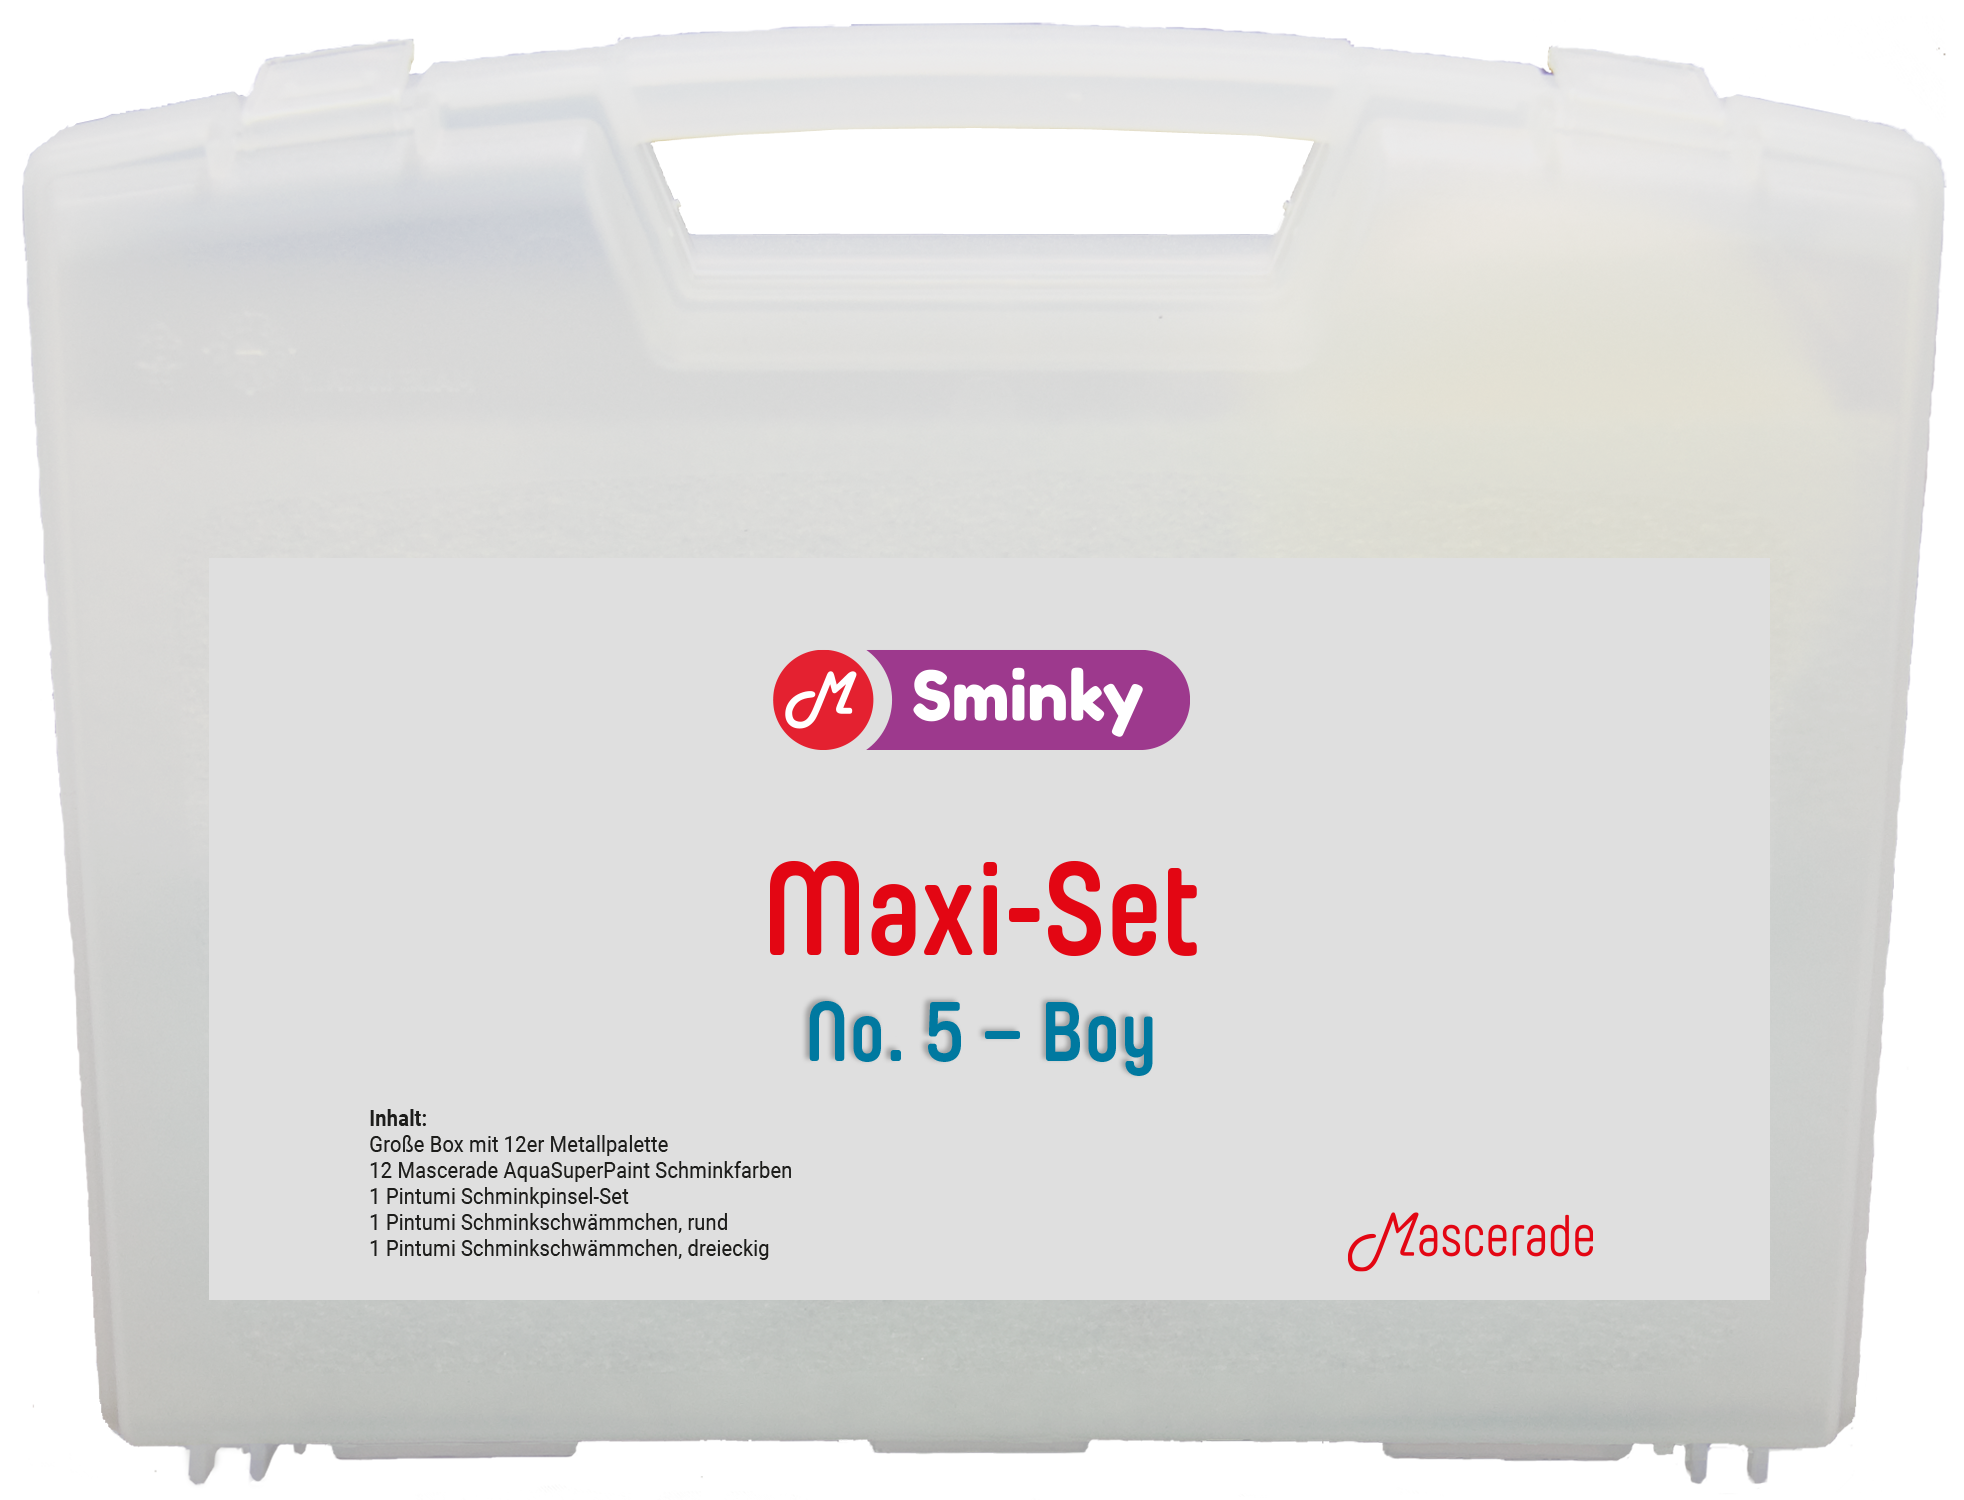 Mascerade Sminky Maxi-Set No.5 mit AquaSuperPaint Schminkpalette Boy, SET-MAXI-5